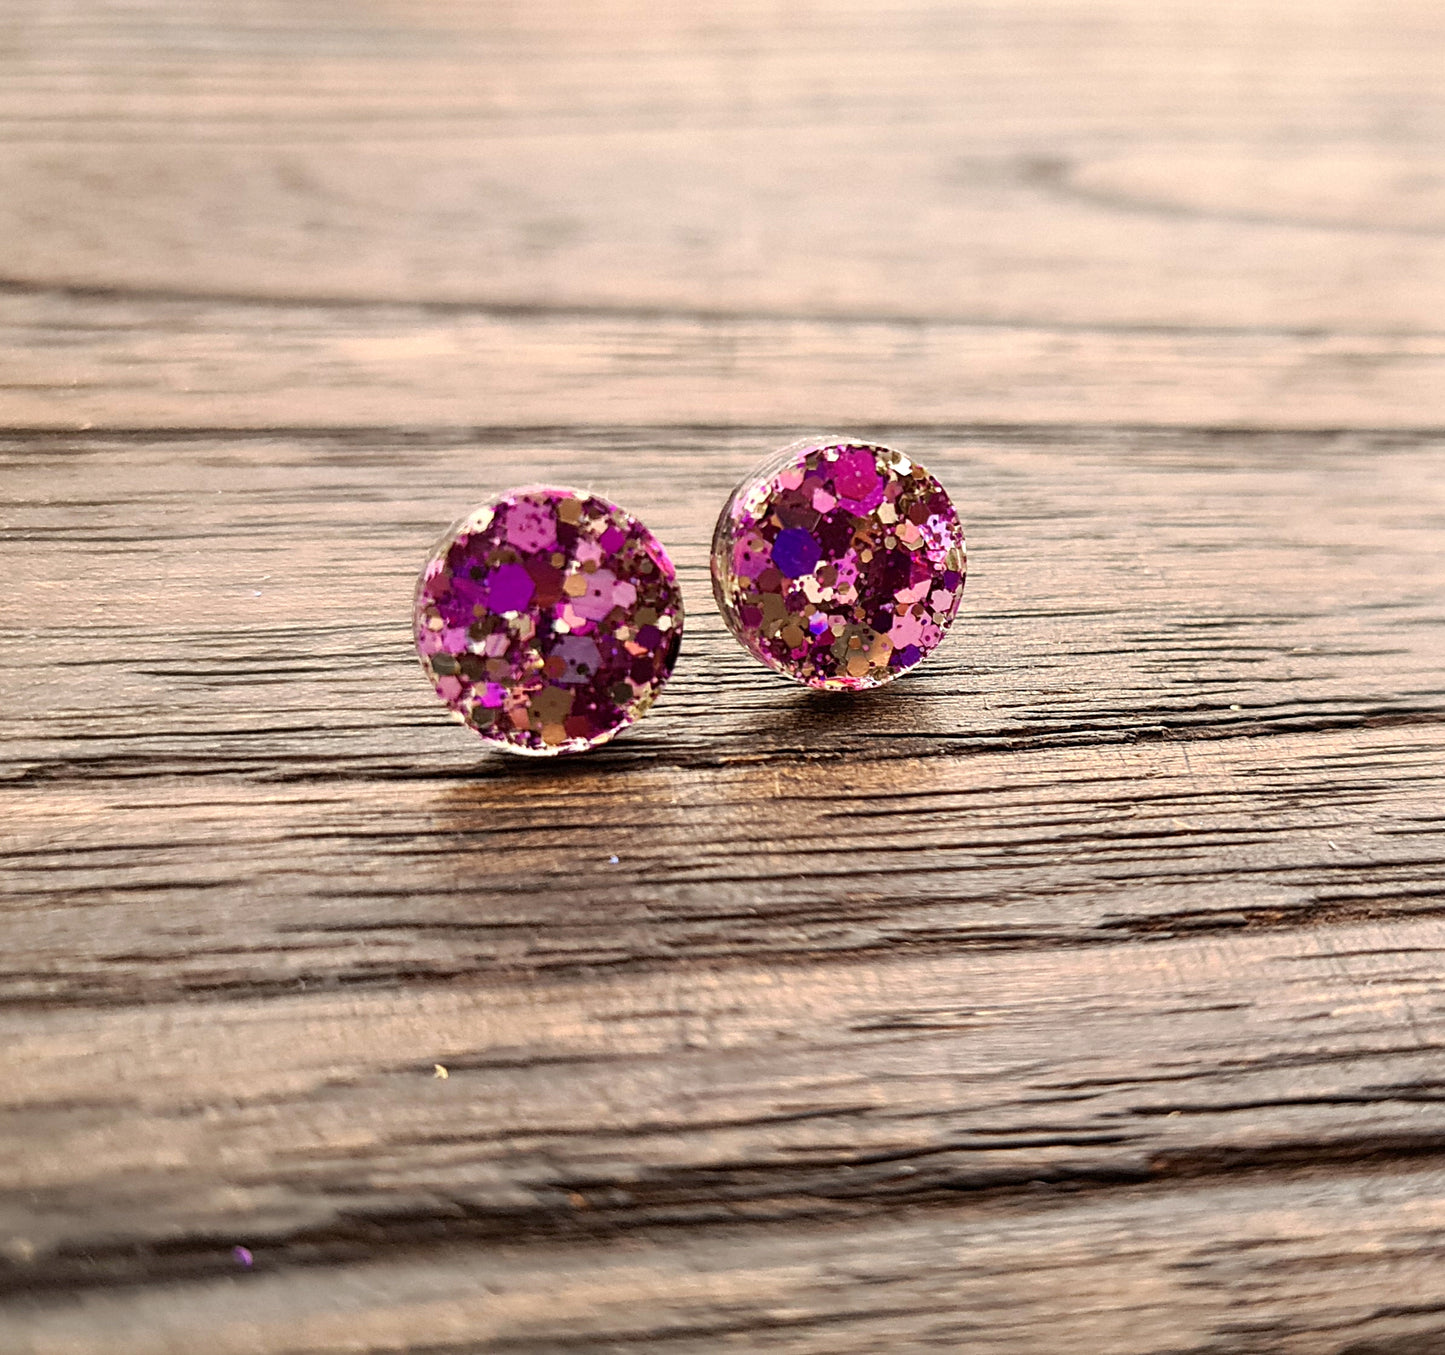 Circle Dot Resin Stud Earrings, Pink Purple Silver Mix  Glitter Earrings. Stainless Steel Stud Earrings